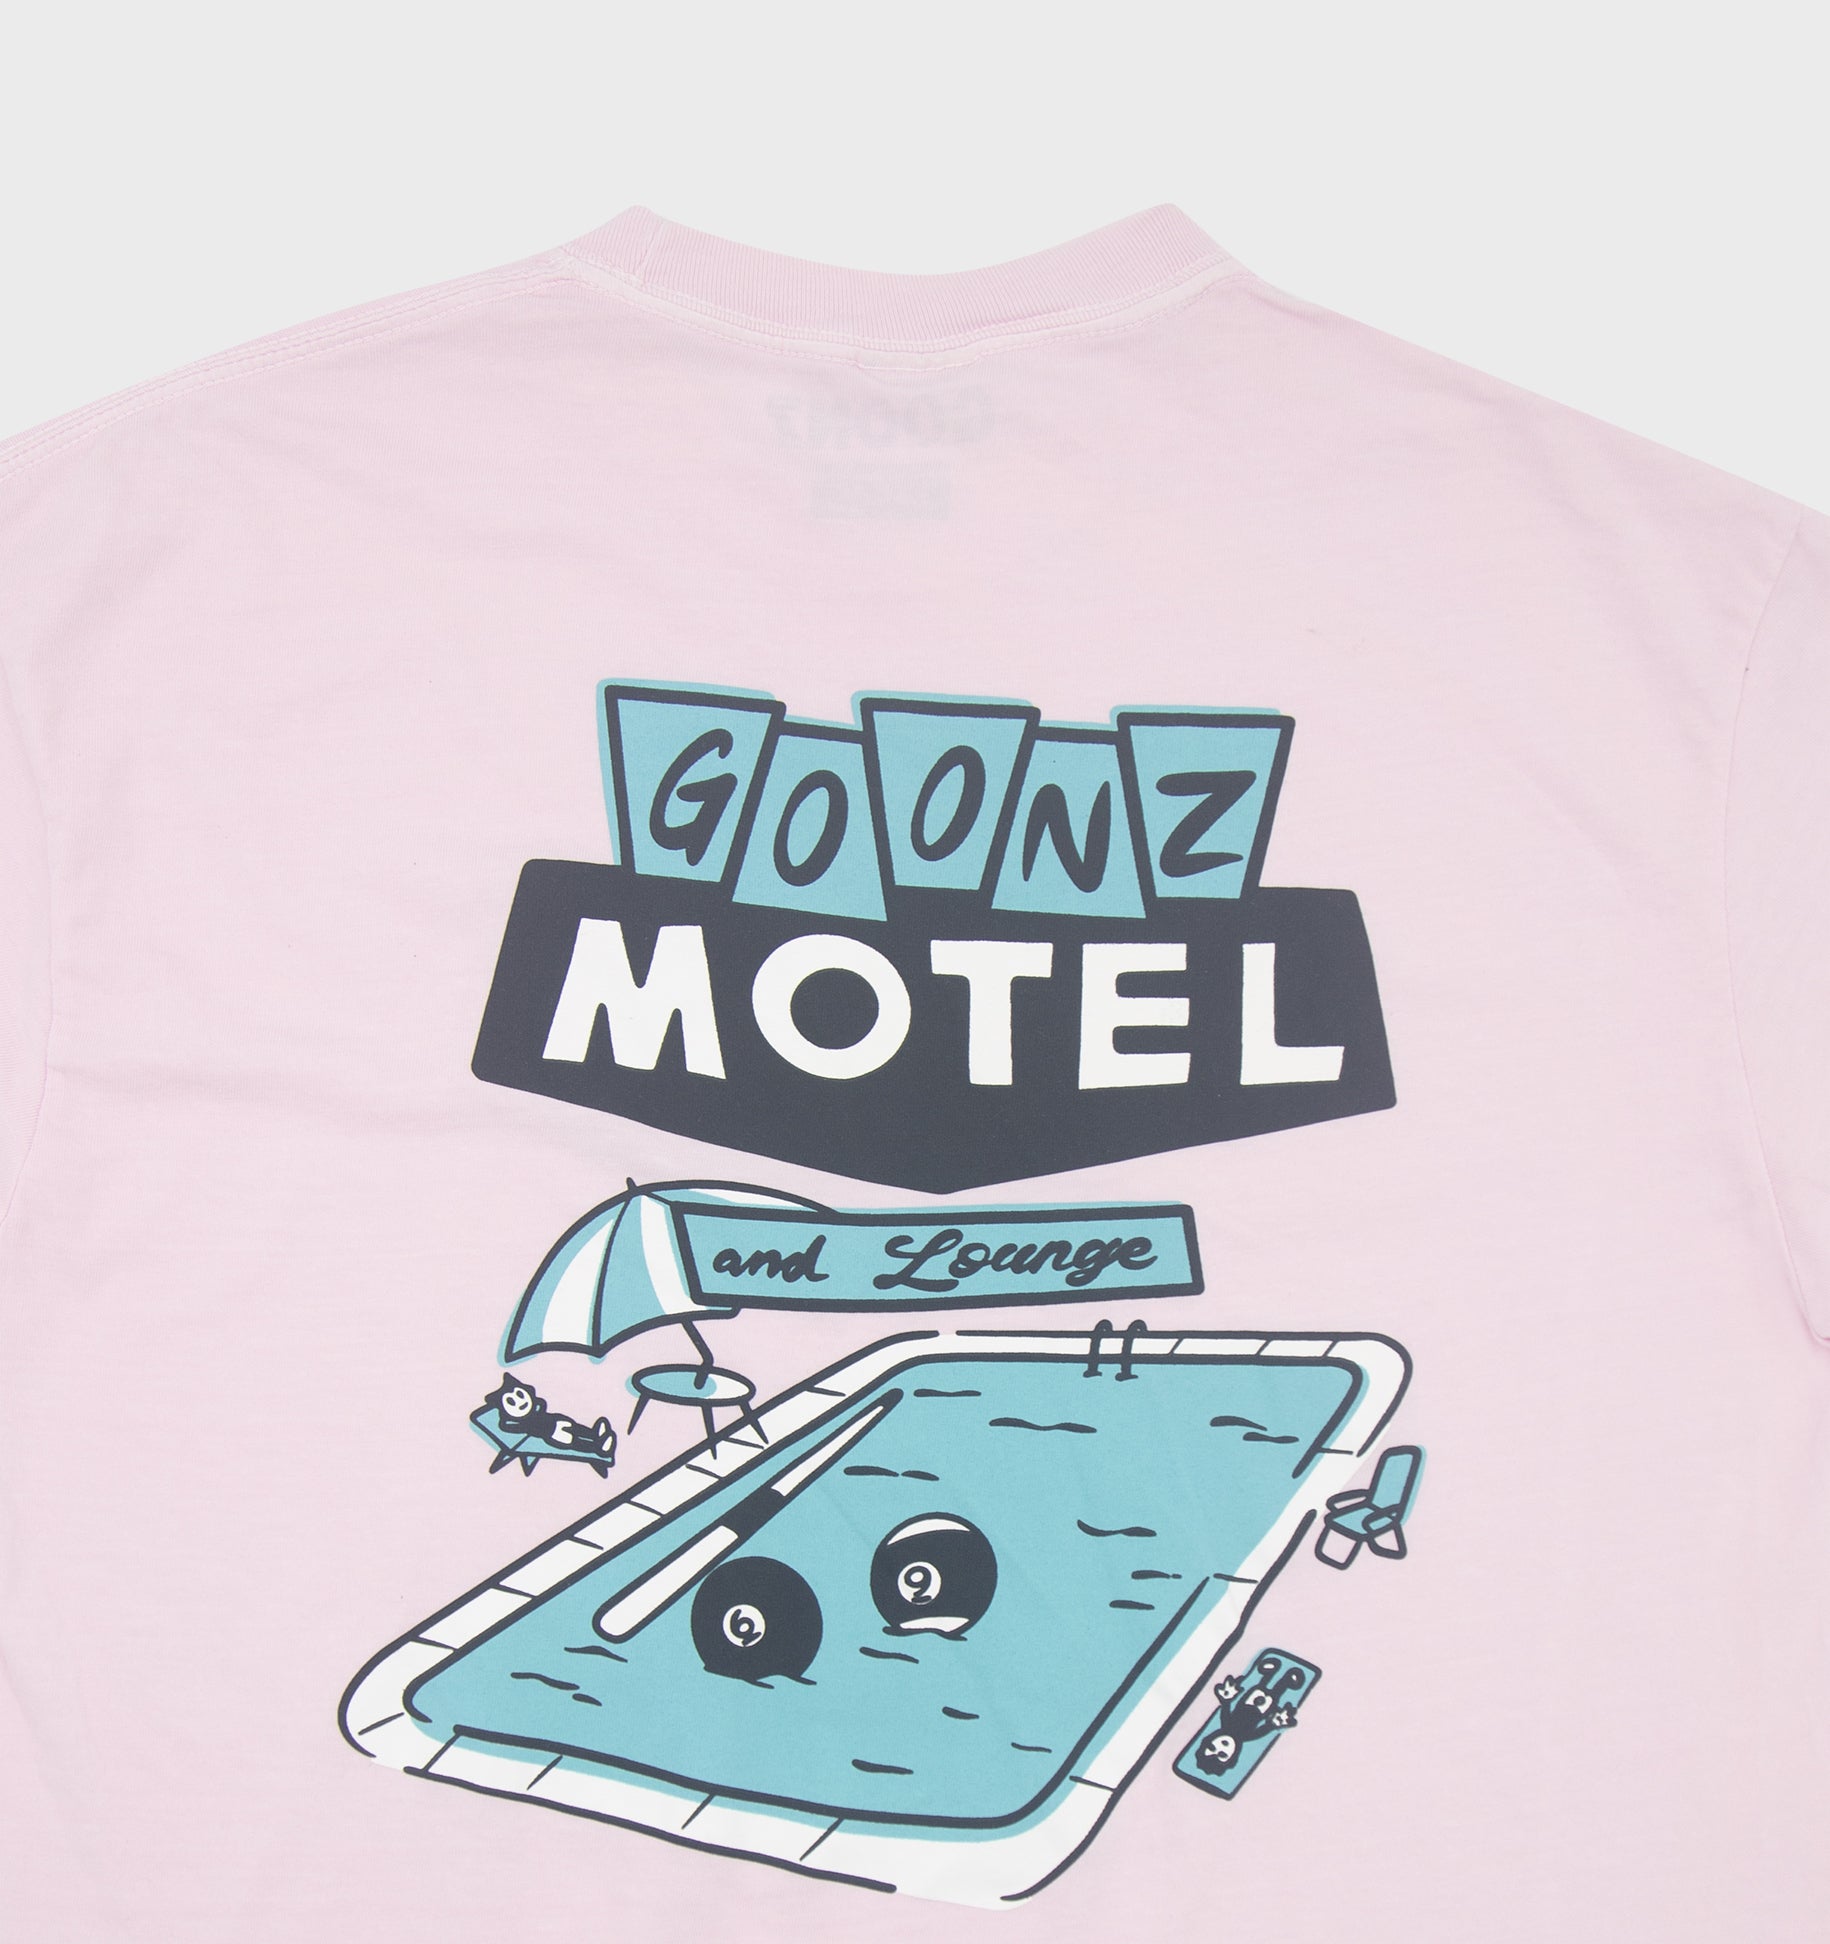 Motel Gift Shop - Pink